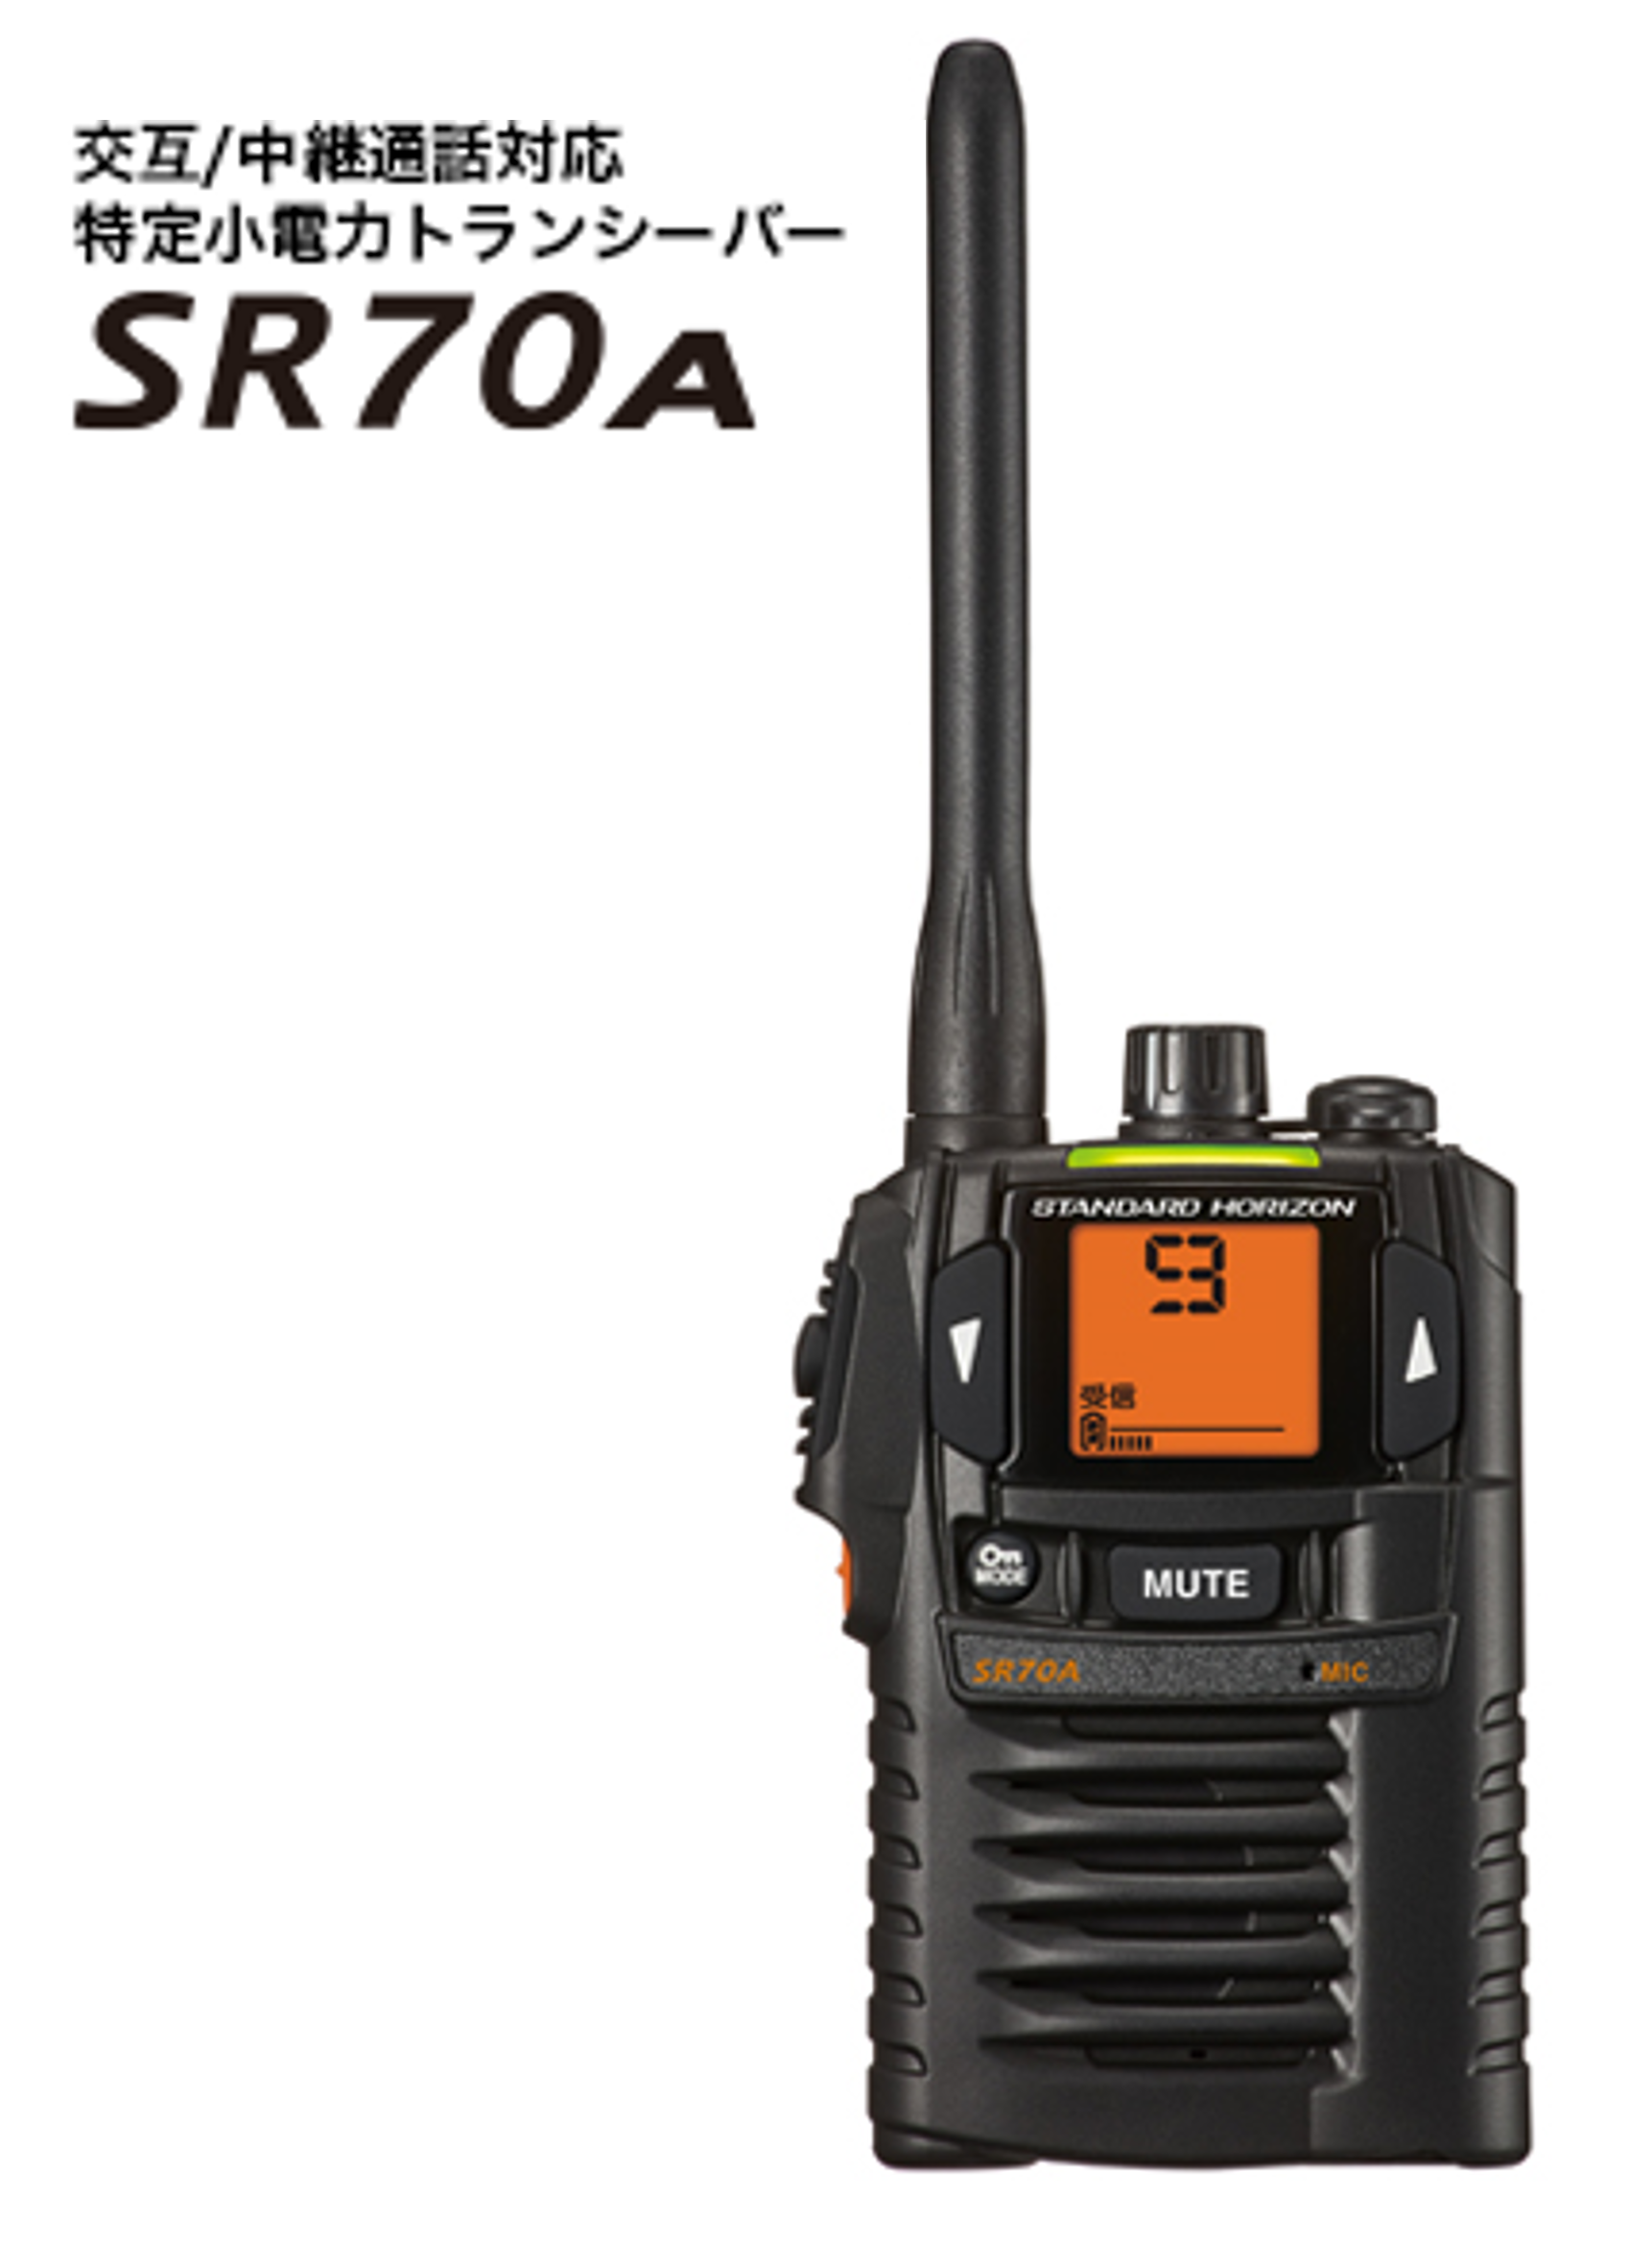 お得正規品八重洲 SR70A 特定小電力トランシーバー+バッテリー+充電器 2台セット アマチュア無線